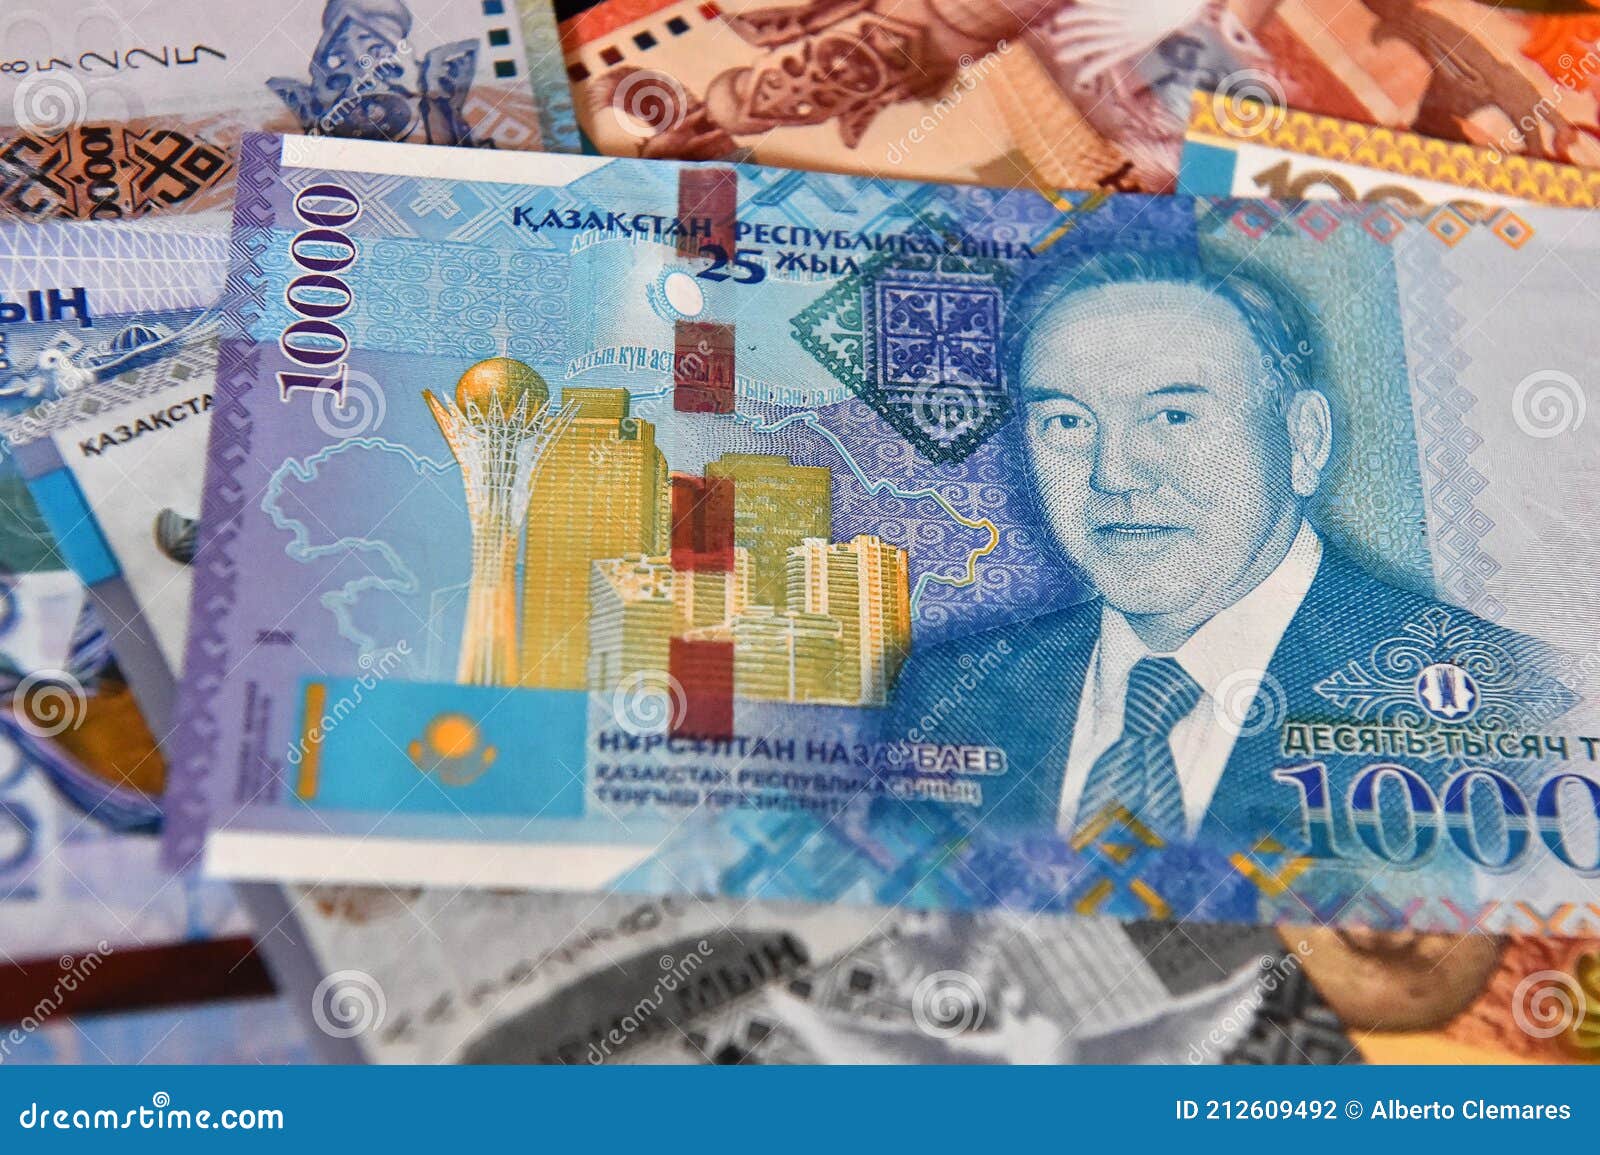 a  current money of kazakhstan